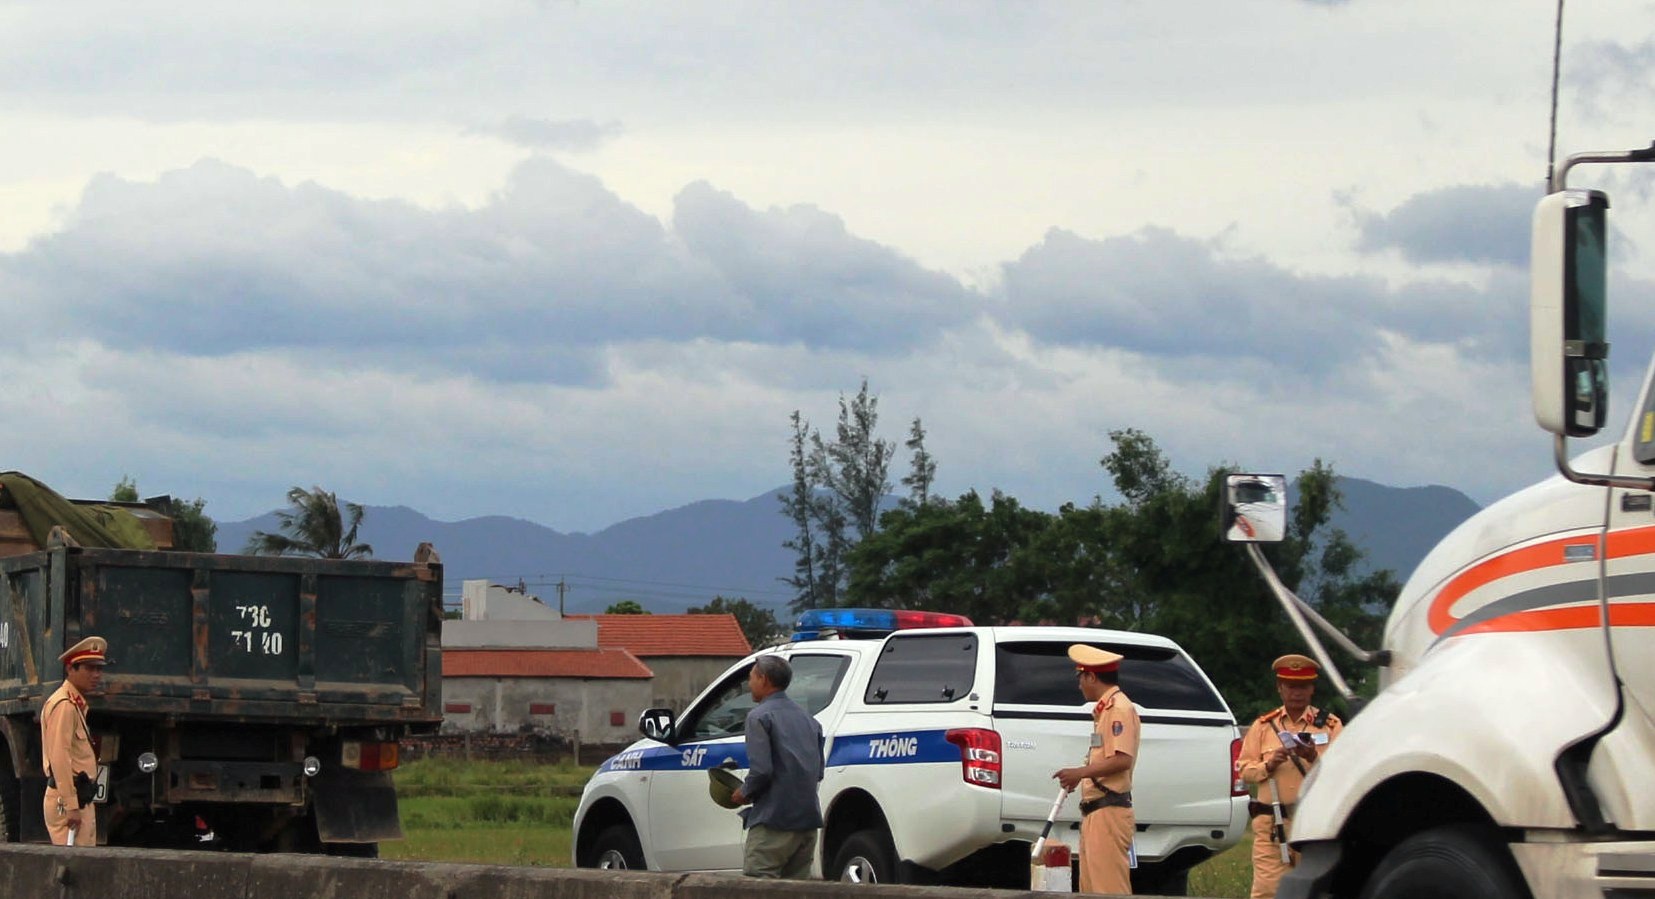   Lực lượng CSGT, Công an tỉnh tuần tra kiểm soát trên tuyến quốc lộ 1A